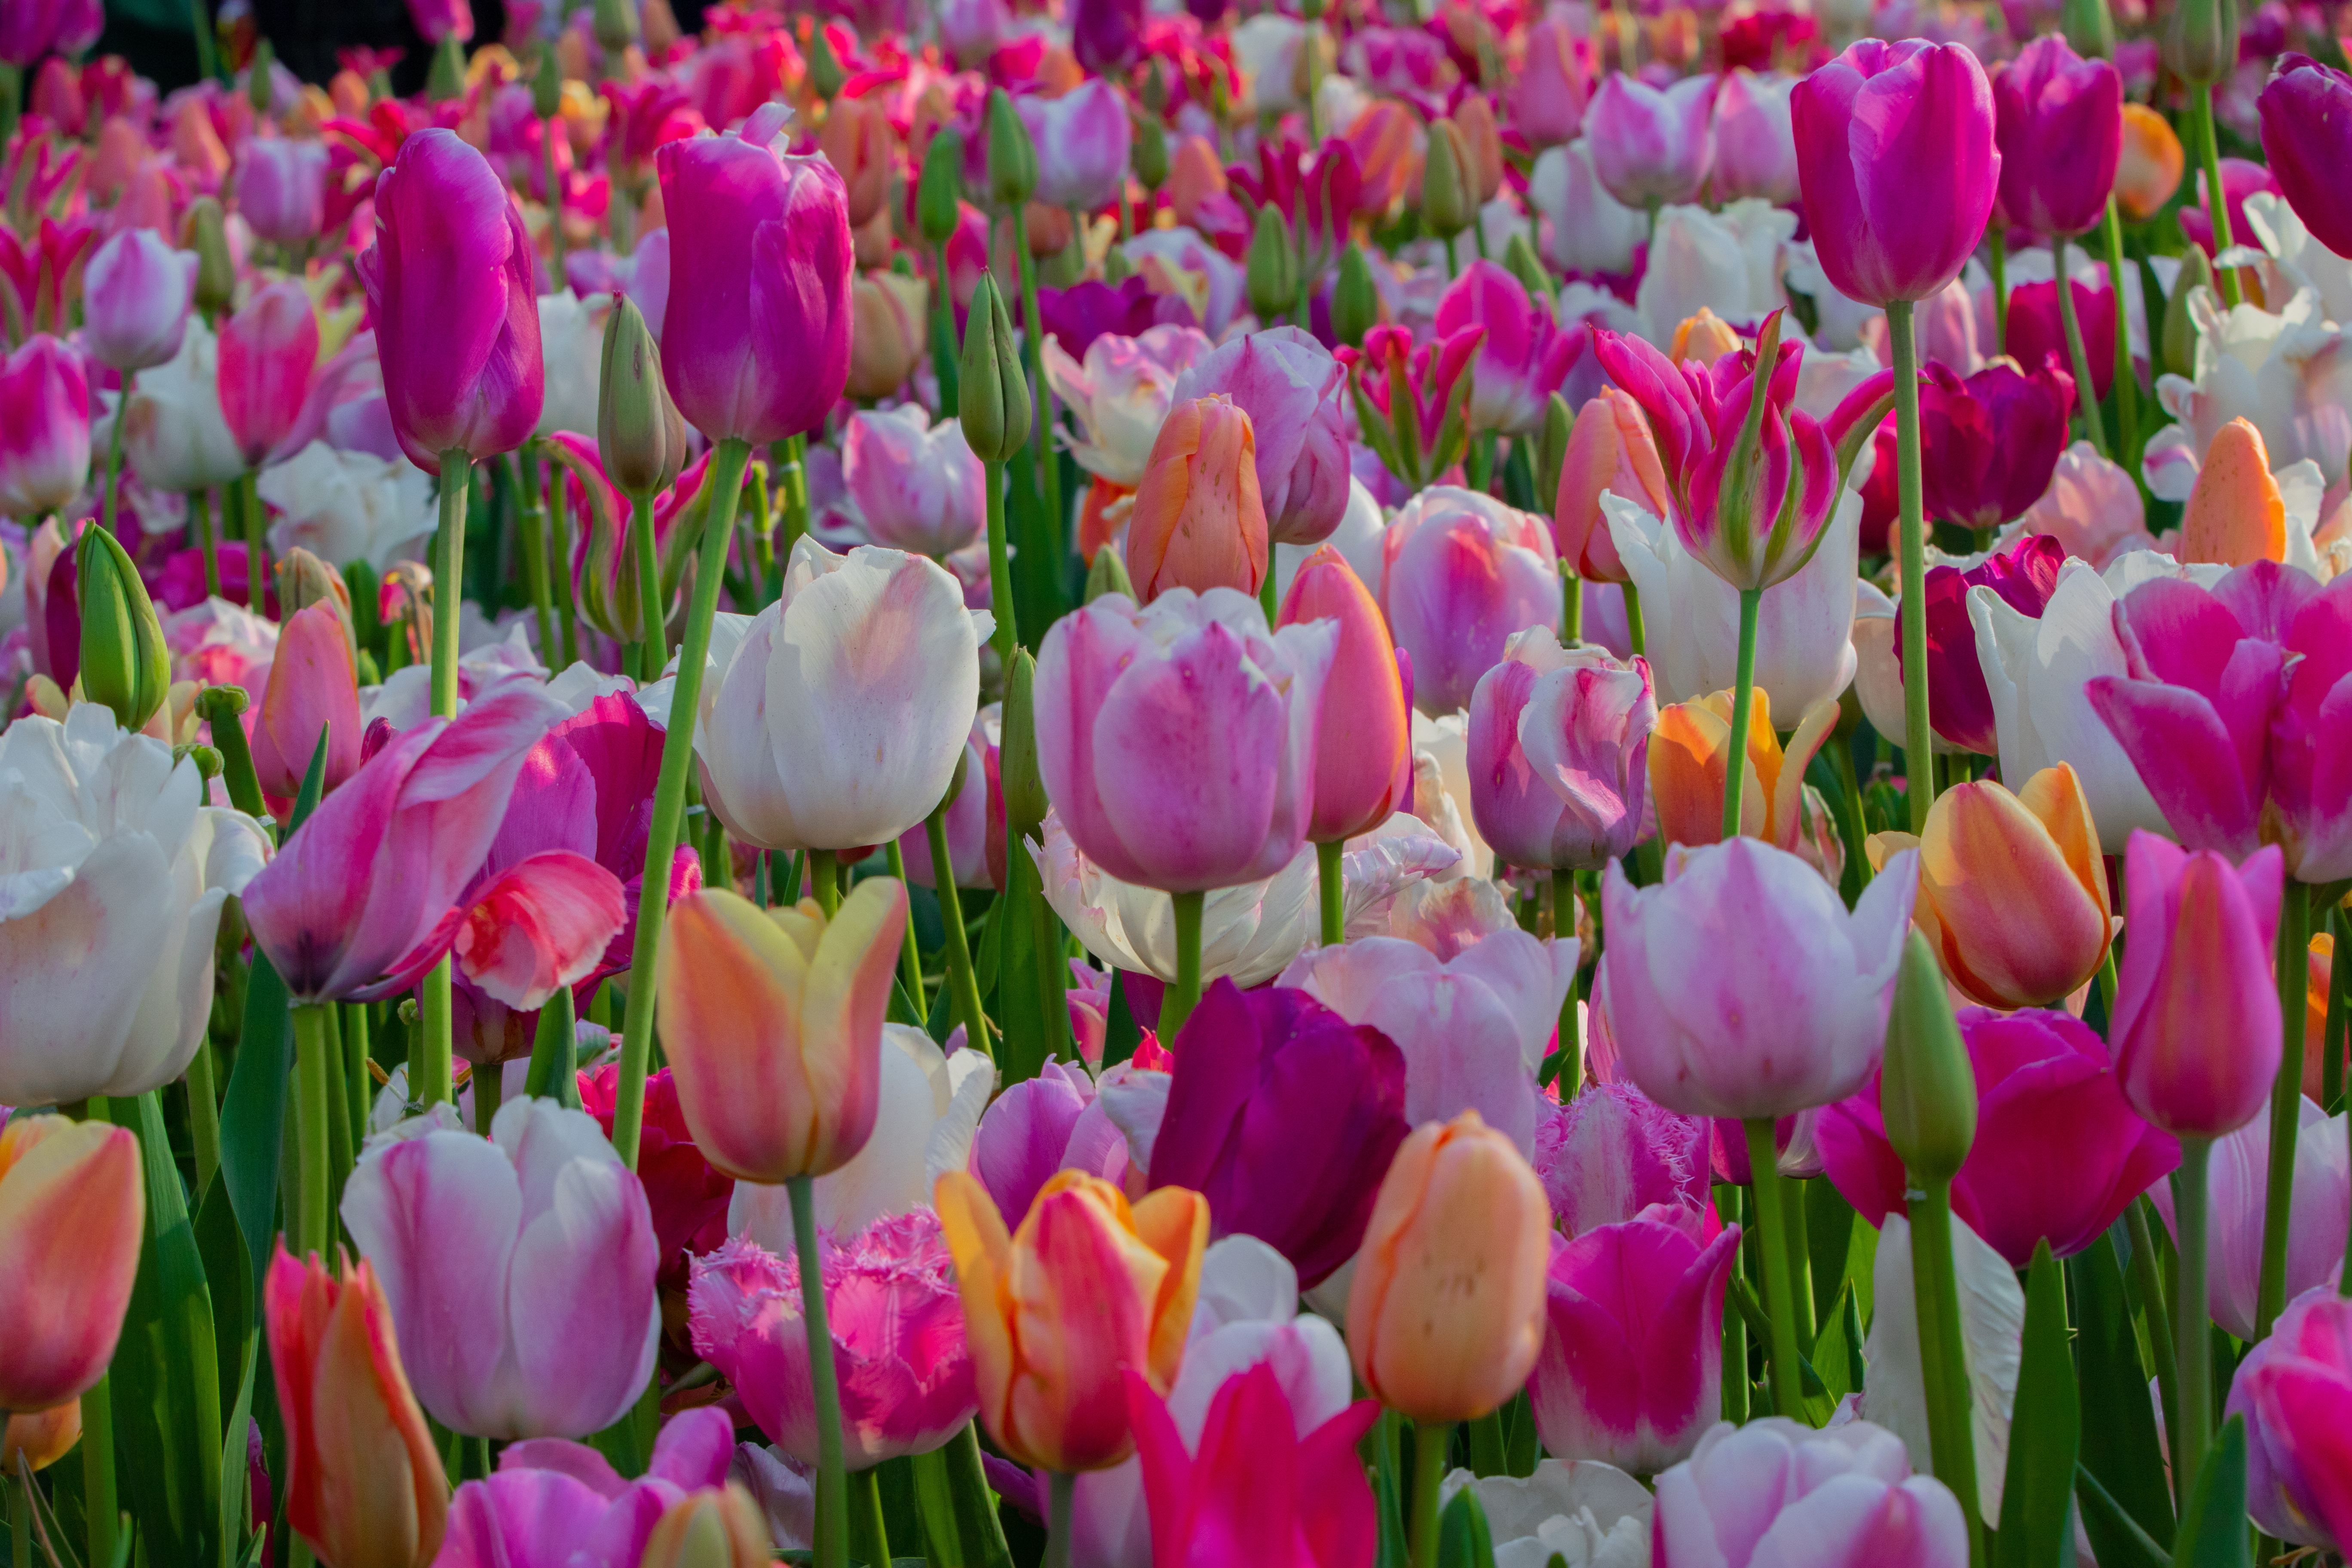 Tulipes, des bulbes aux multiples facettes. Copyright (c) 2022 Seasonsoflife/Shutterstock.